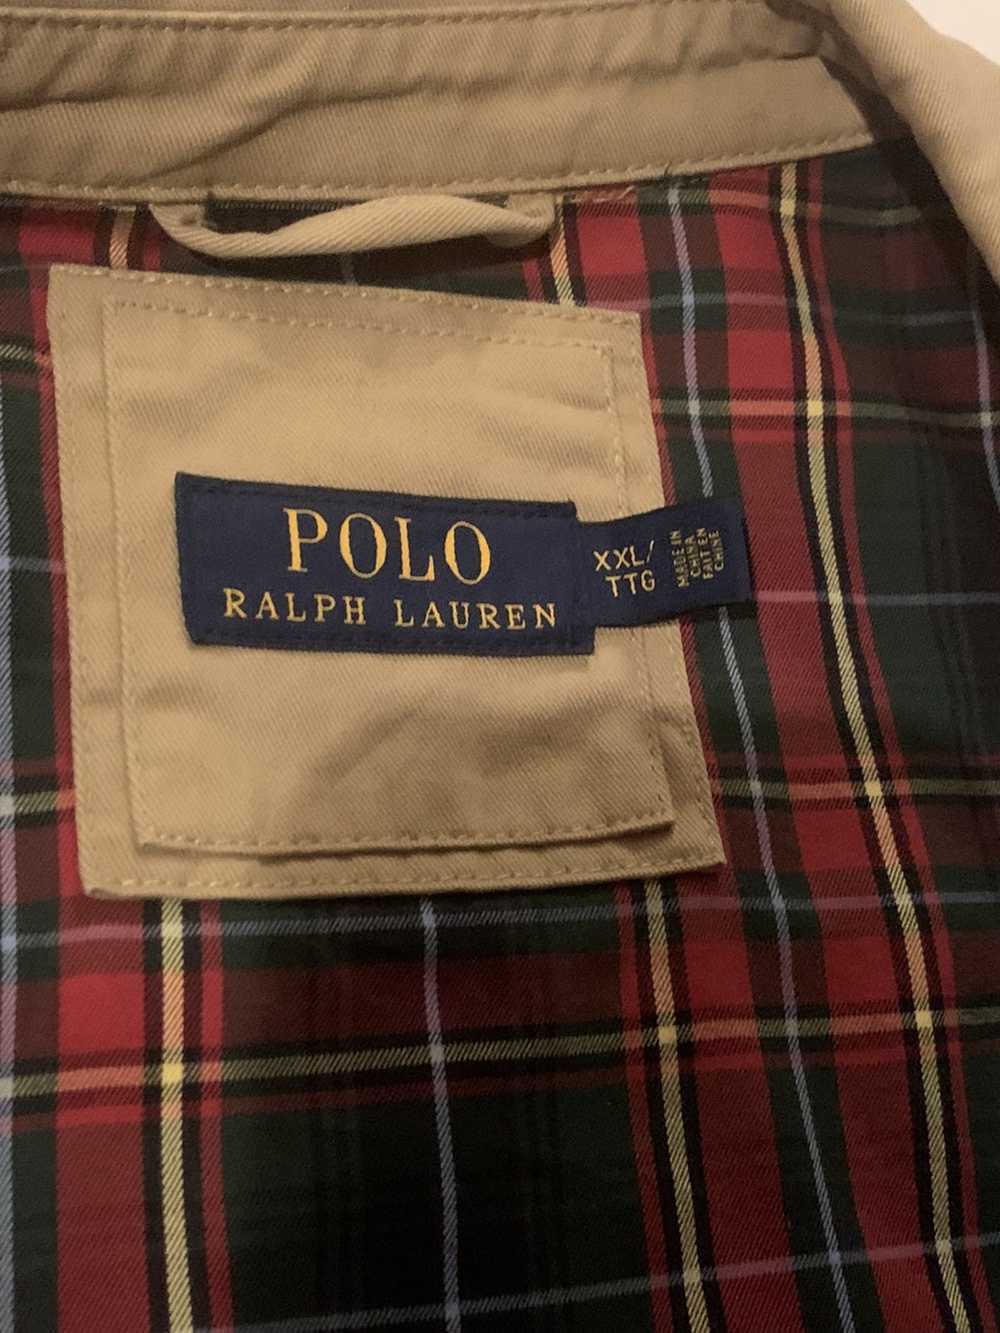 Polo Ralph Lauren Polo Ralph Lauren zip up jacket - image 3